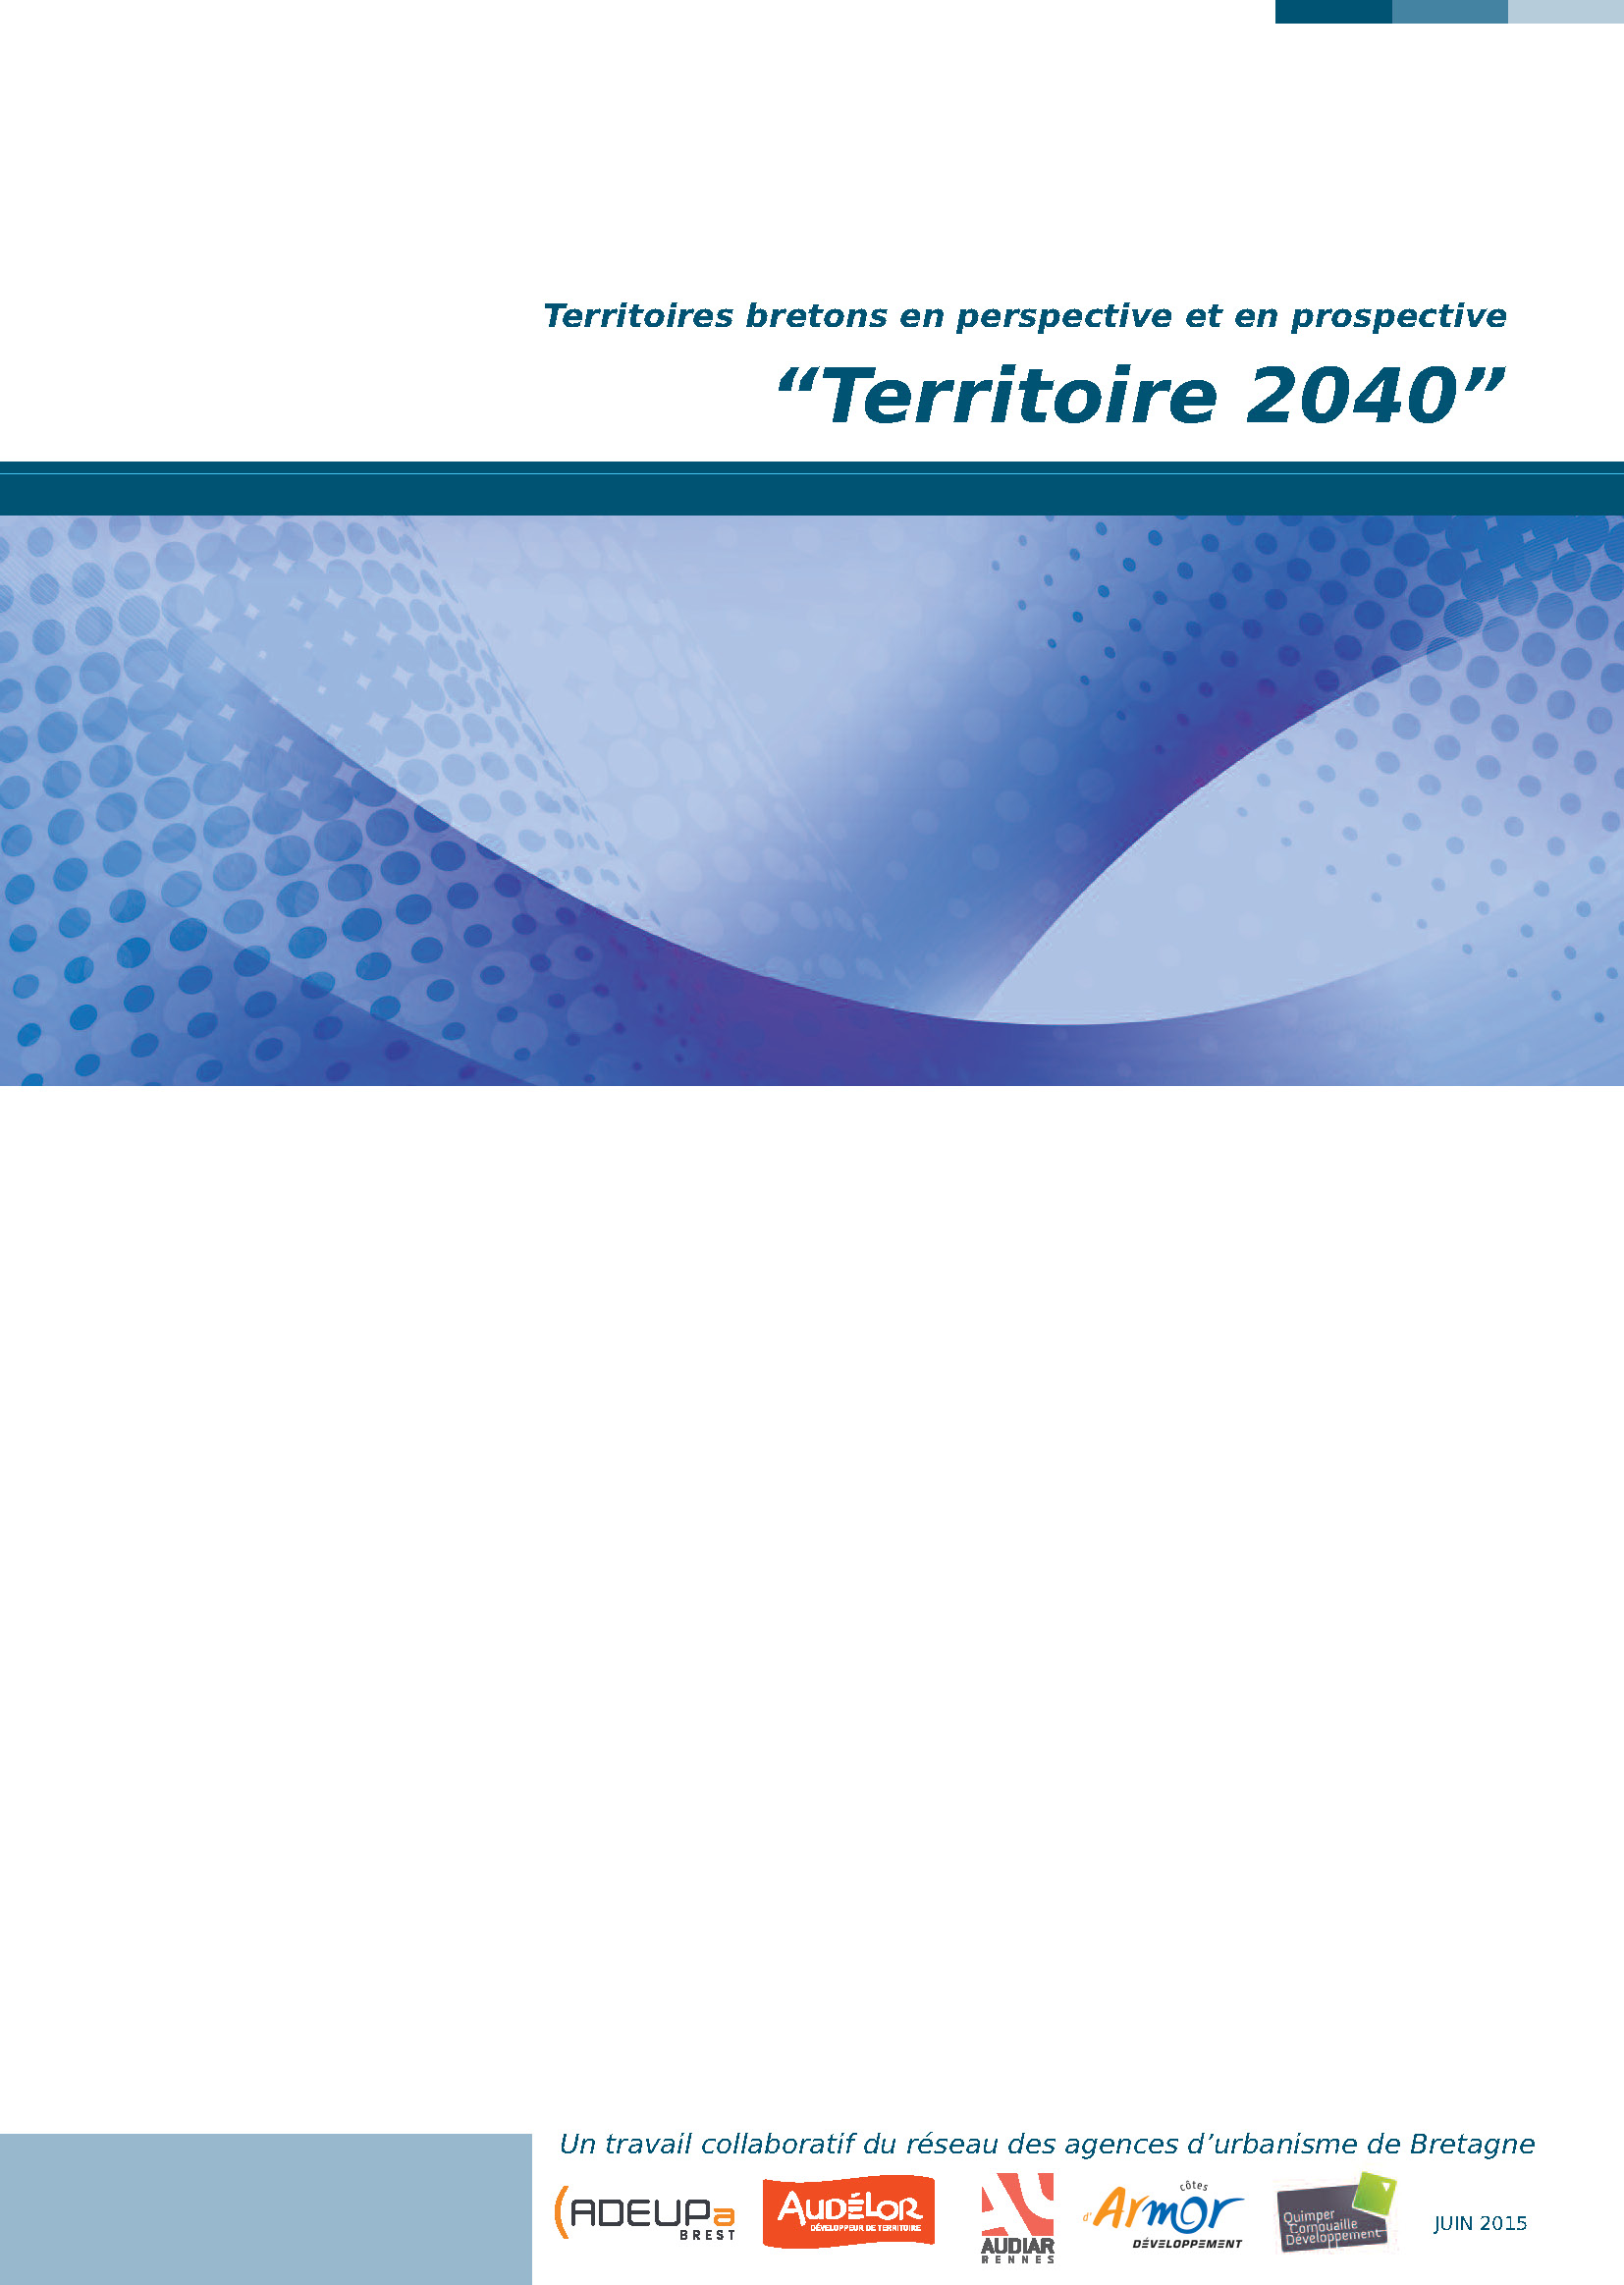 Territoires bretons en perspective et en prospective. "Territoire 2040"